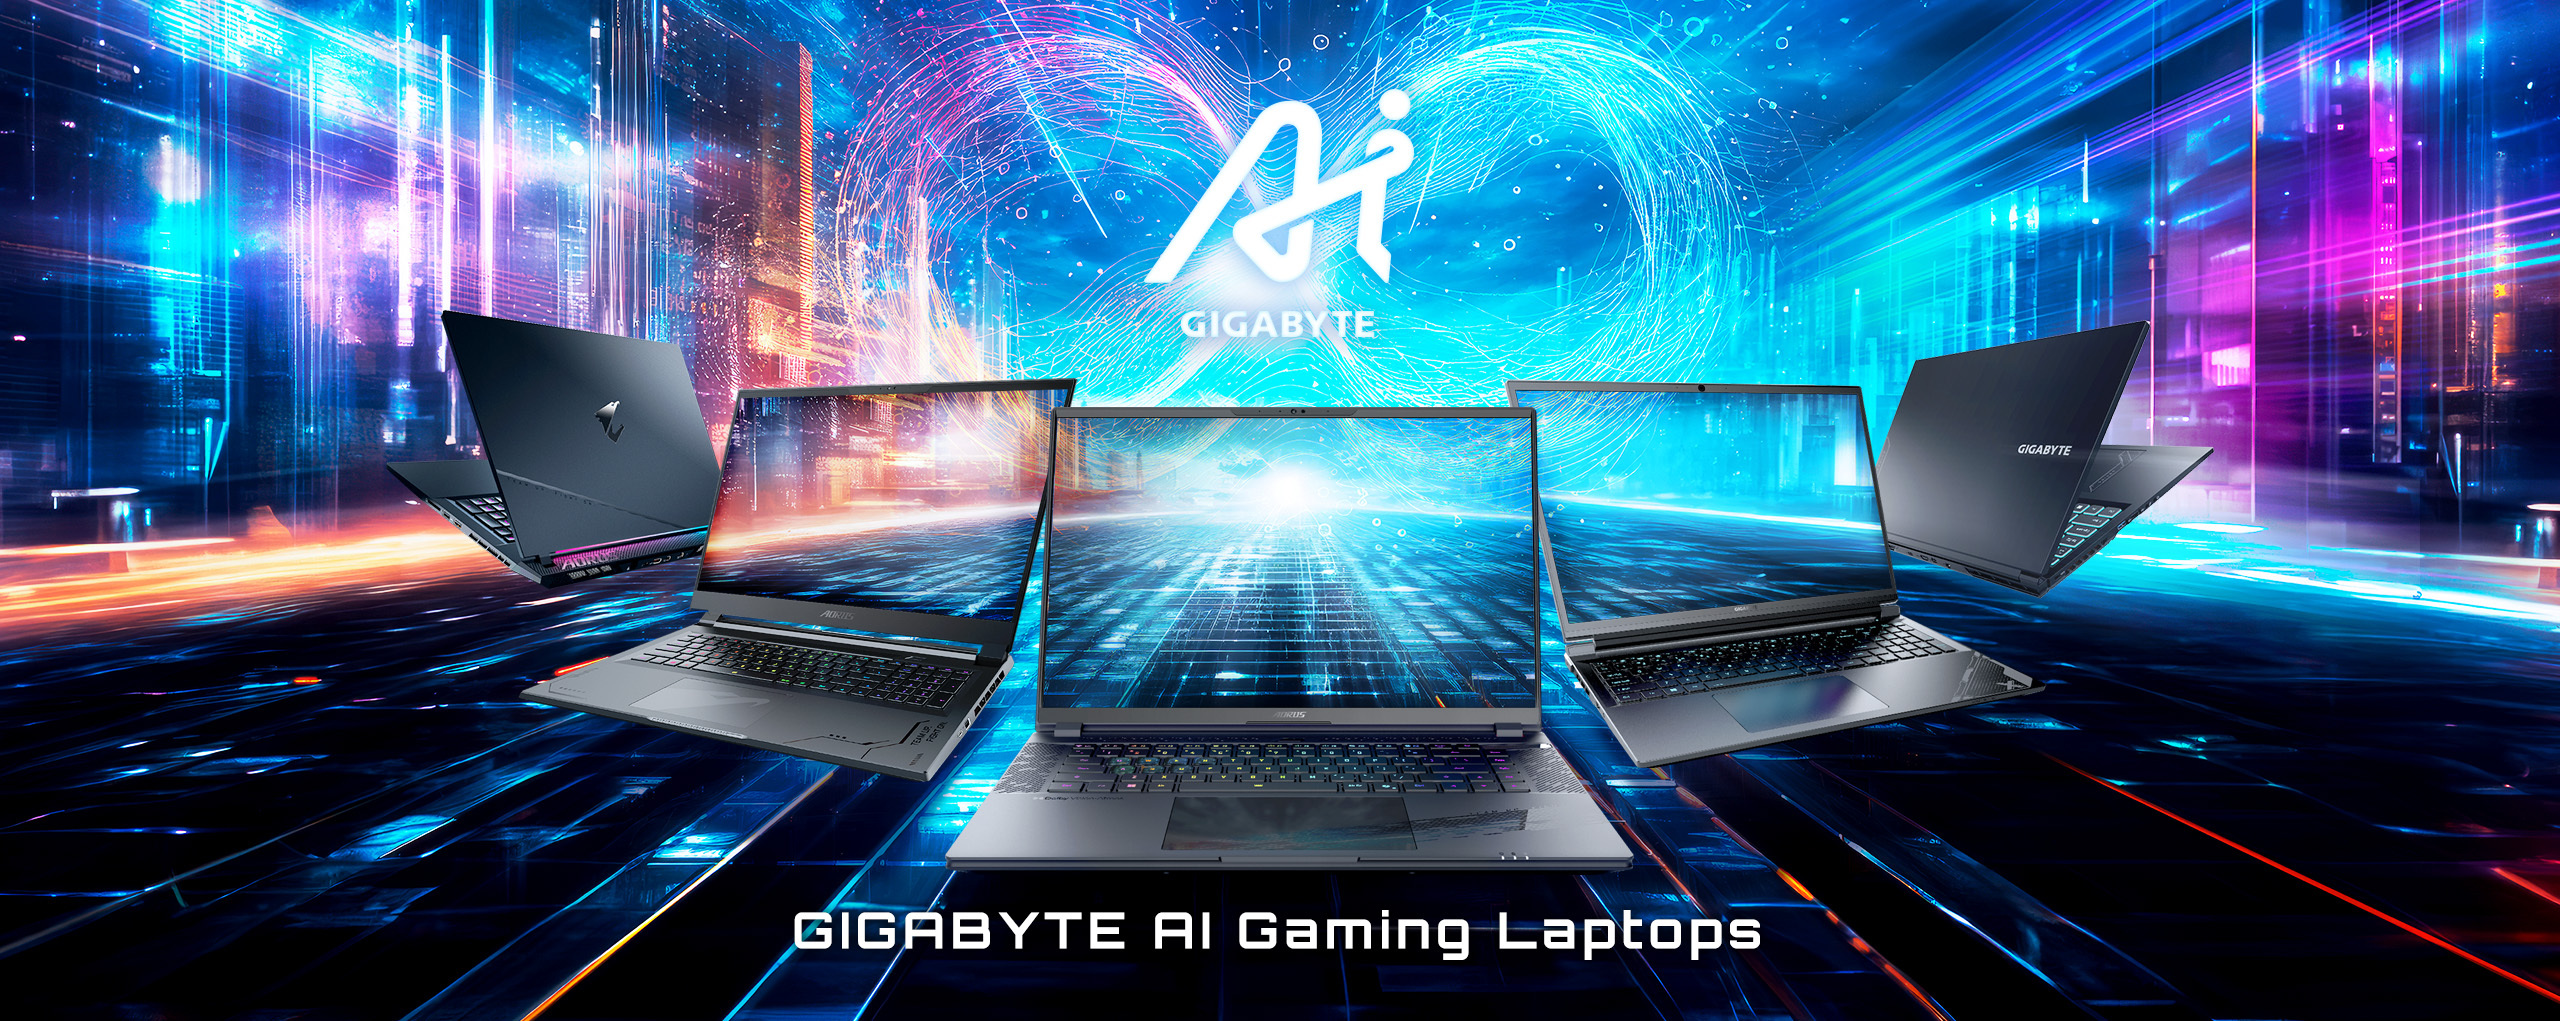 GIGABYTE Gaming  Laptop - GIGABYTE Global